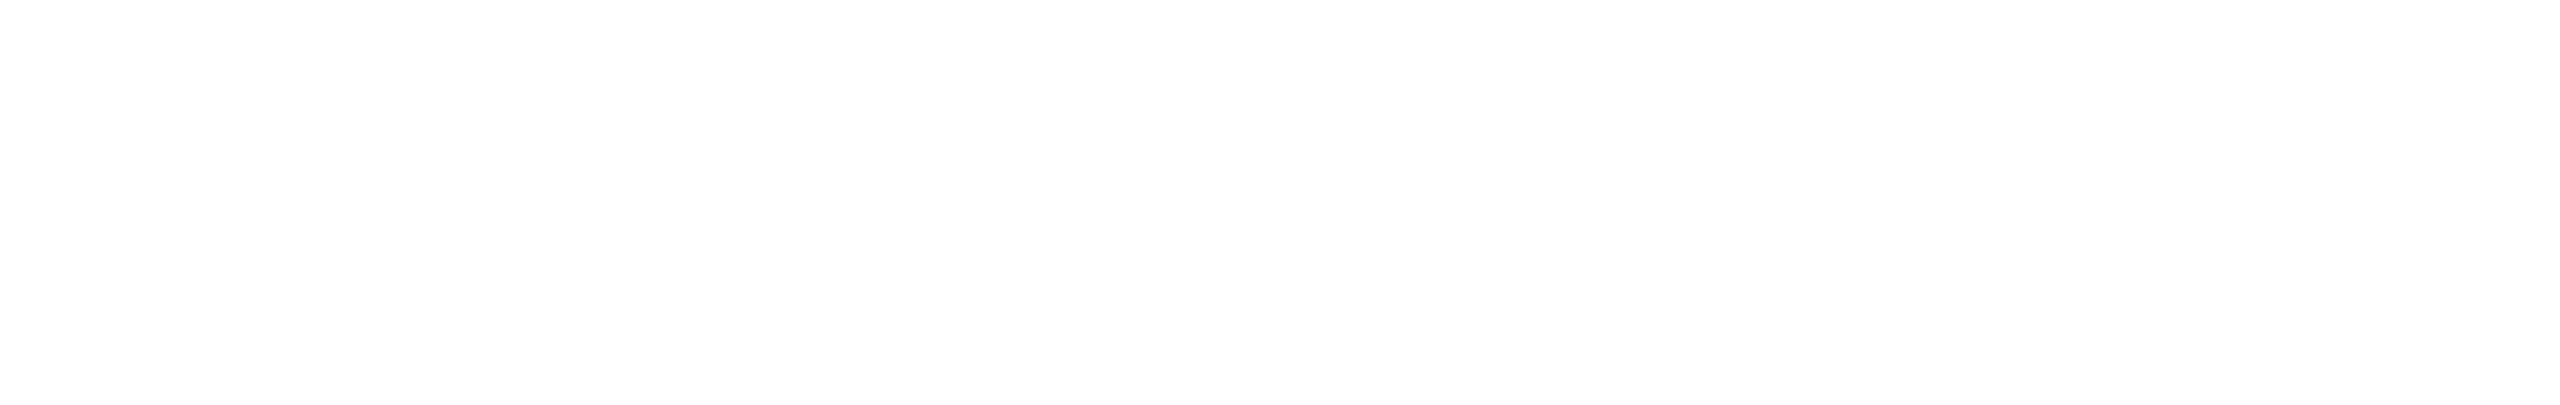 Quantum_Corporation_logo